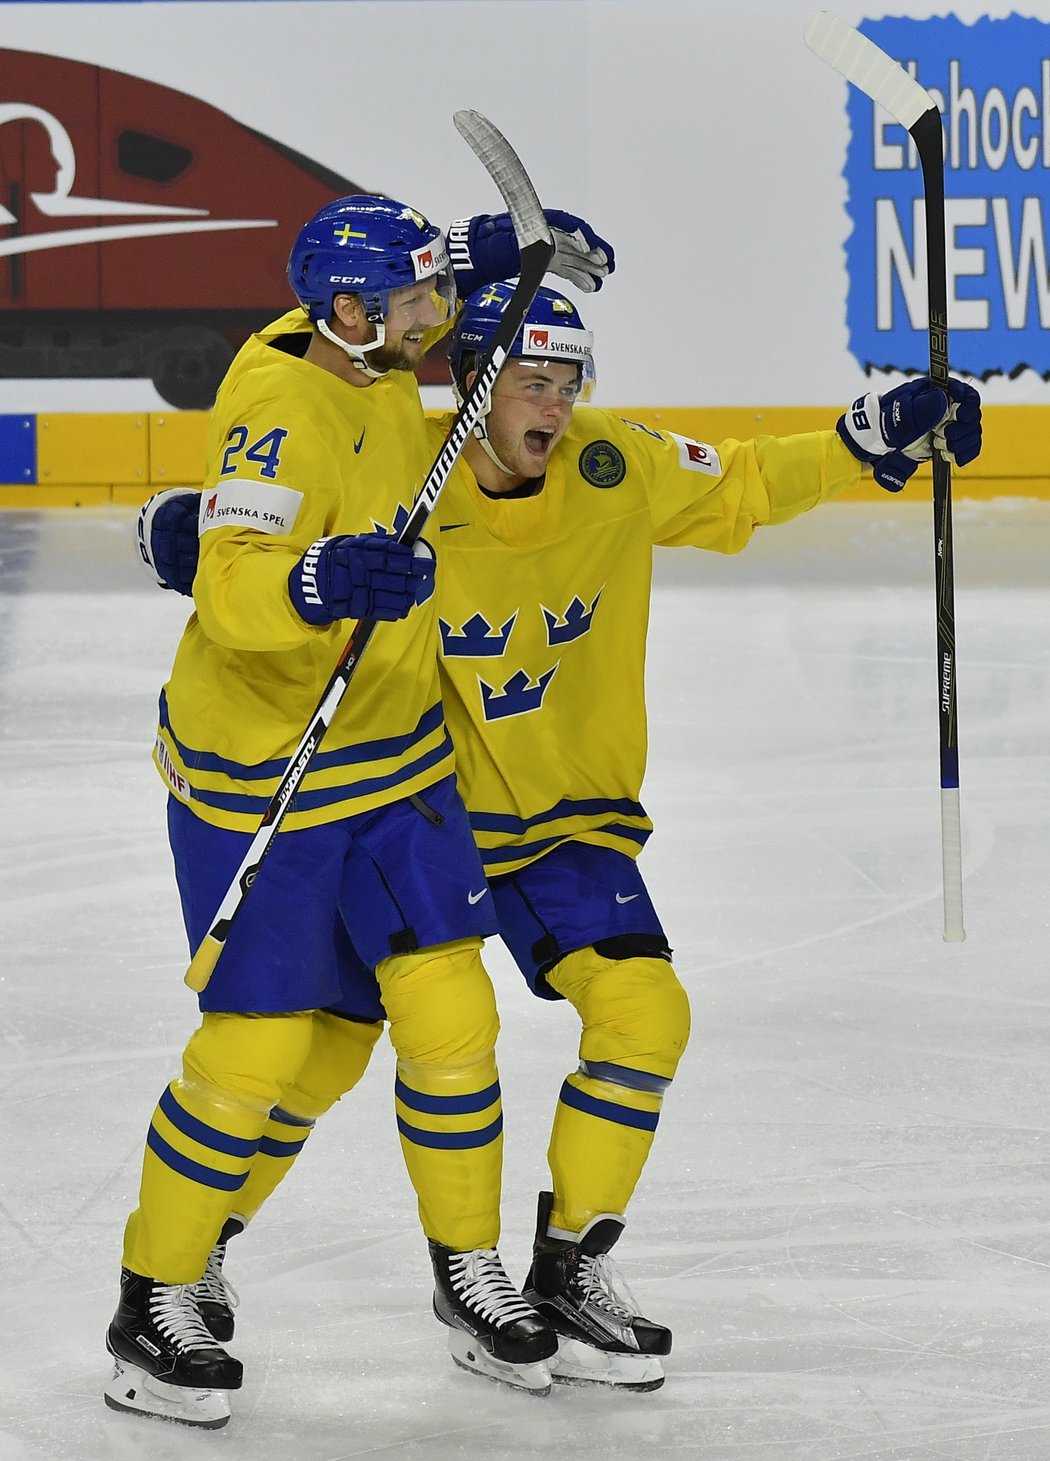 Hokejisté Švédska oslavují gól do sítě Finska